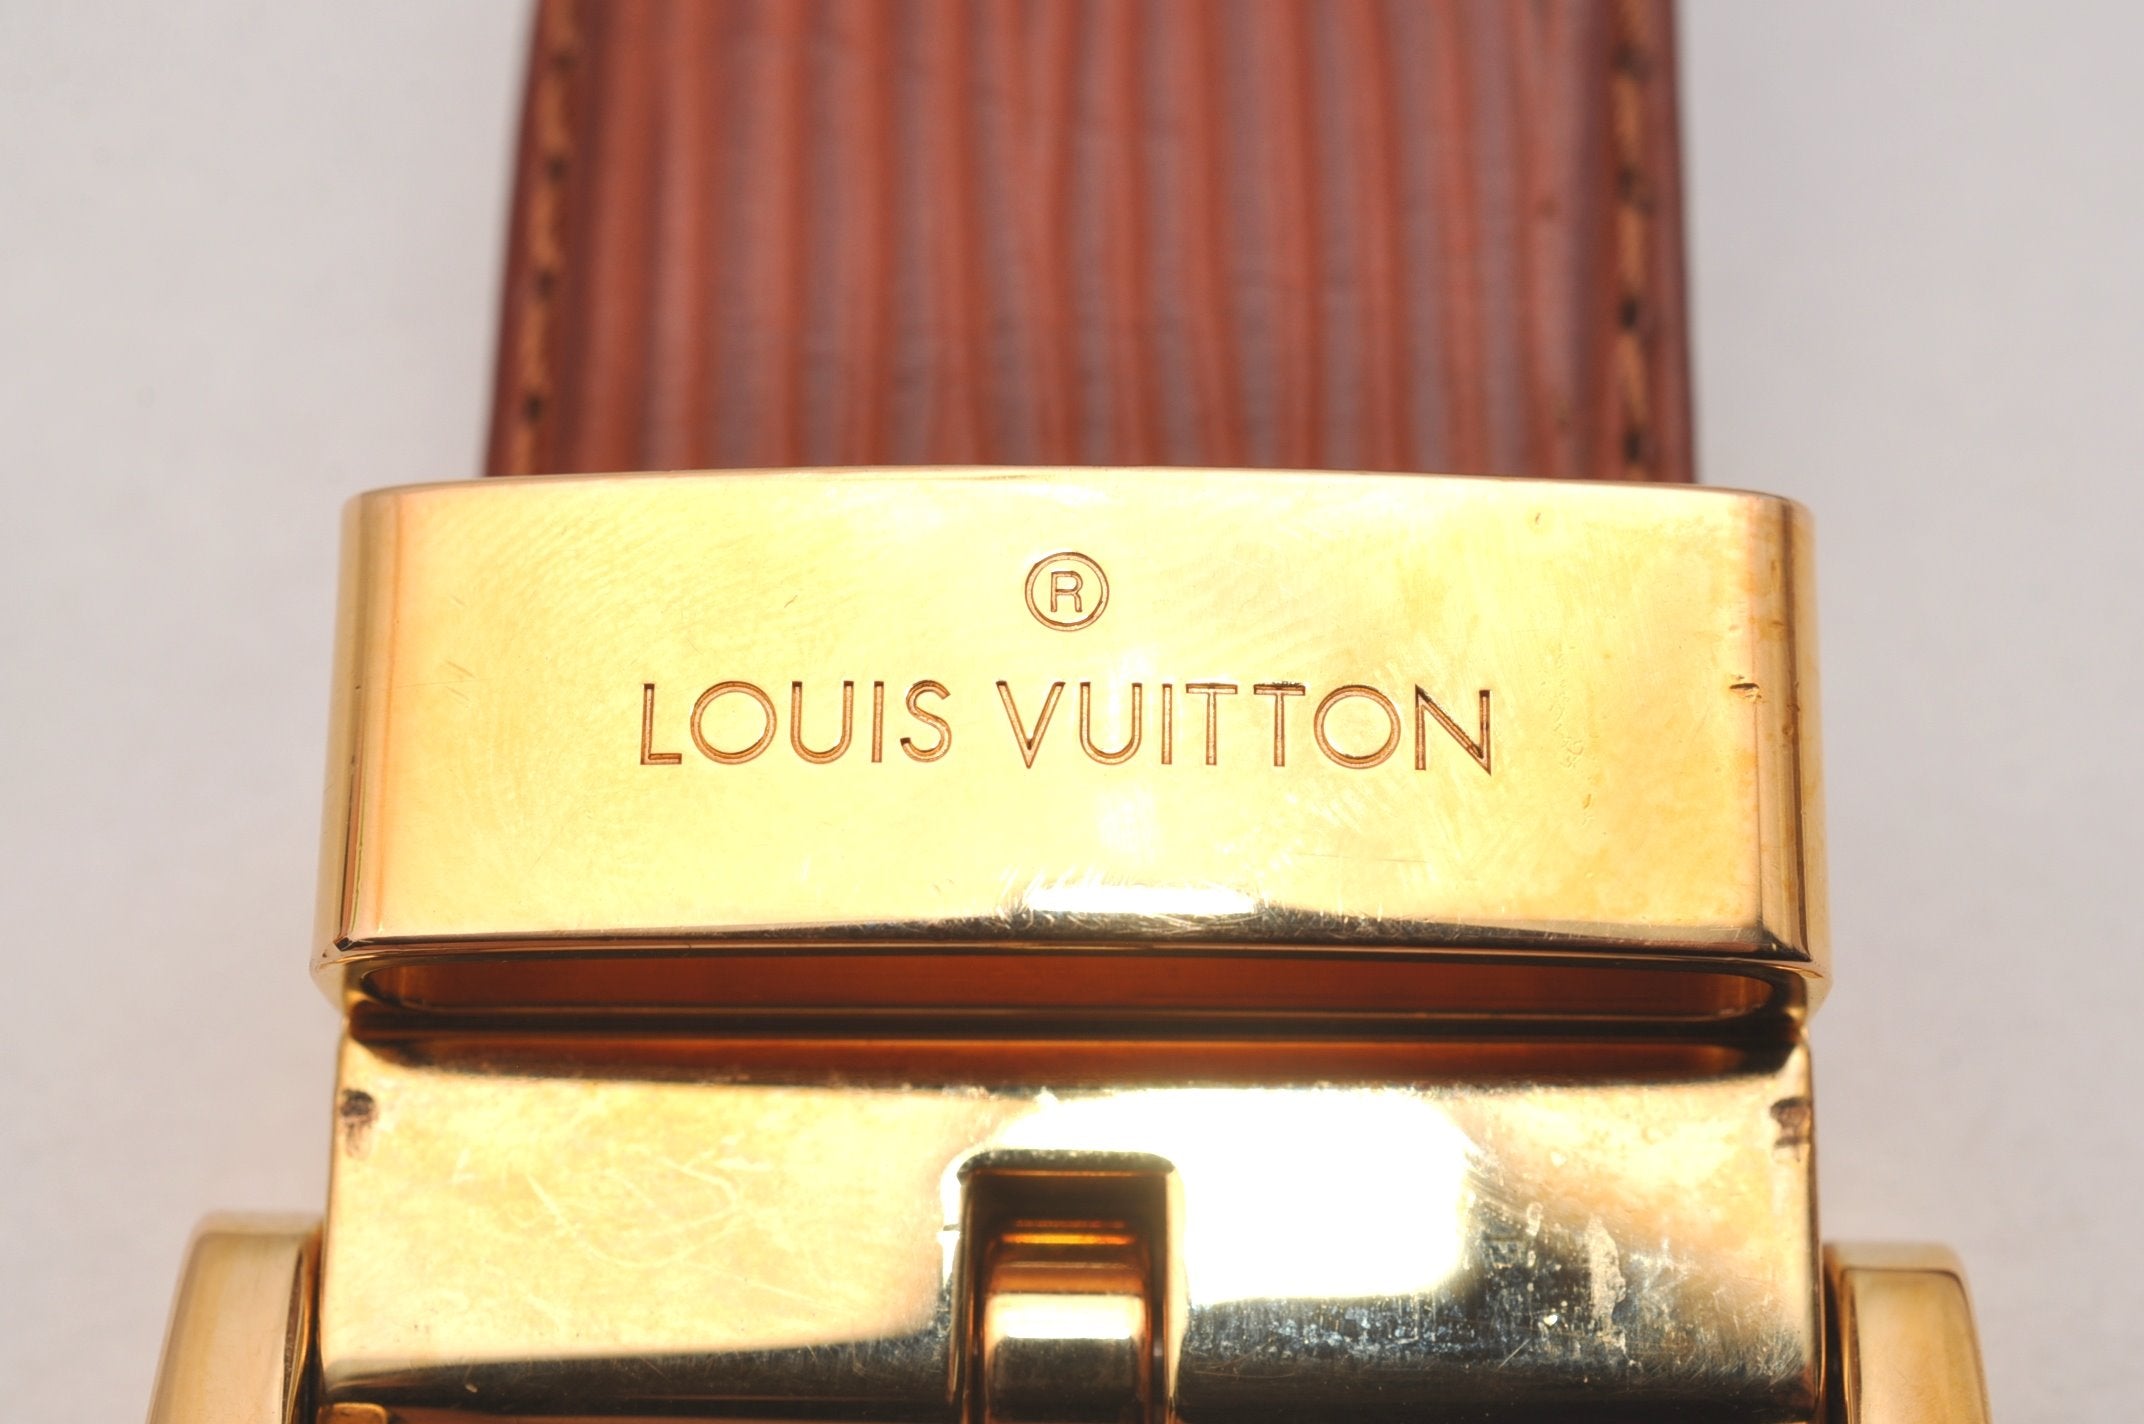 Authentic Louis Vuitton Epi Ceinture Belt 83-93cm 32.7-36.6